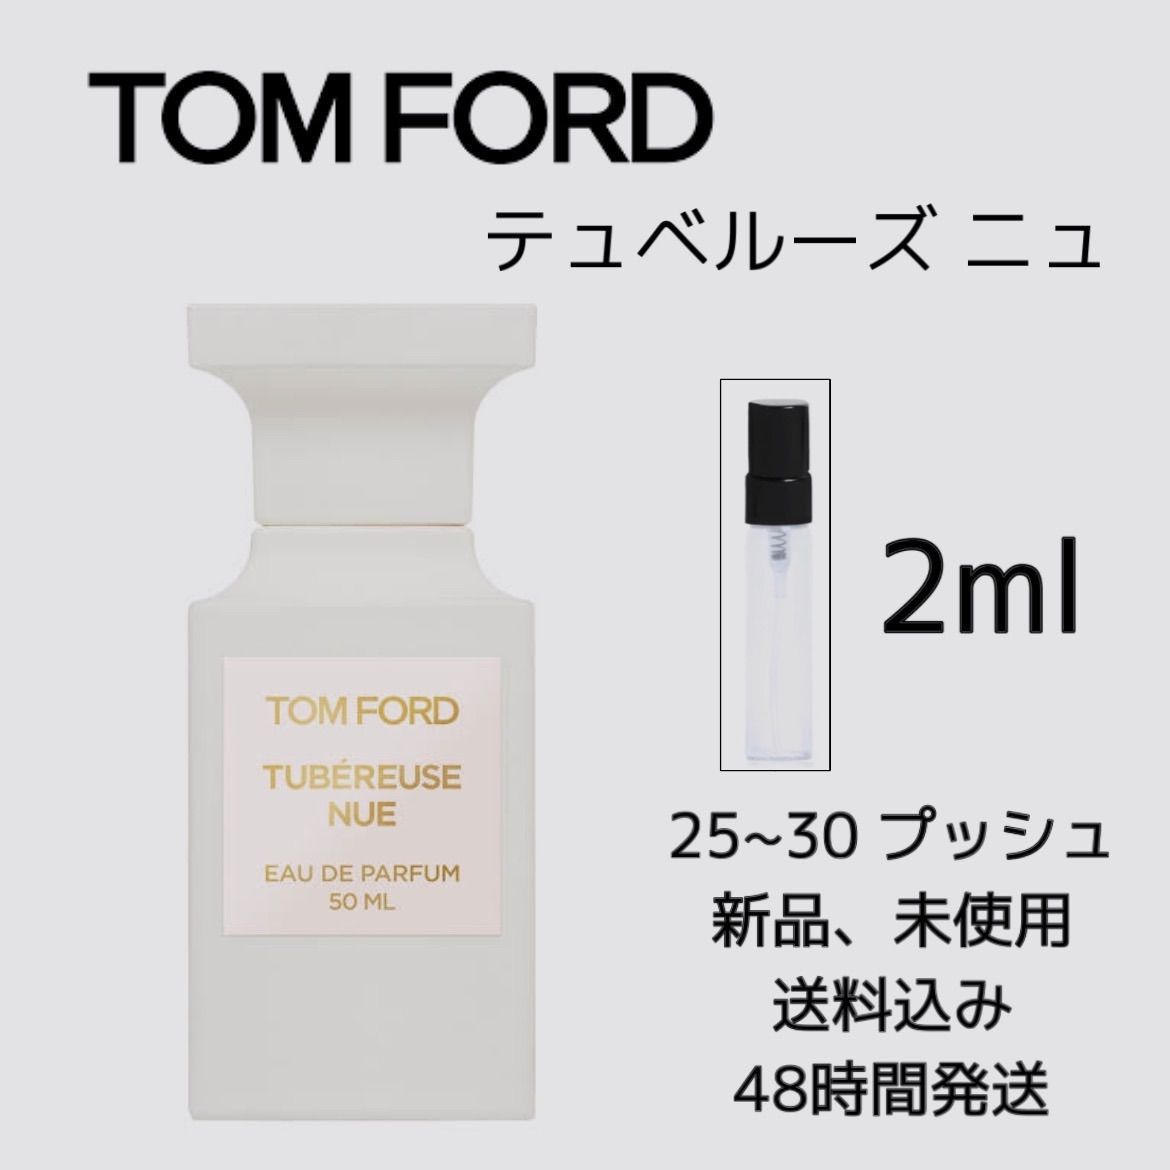 新品 お試し 香水 TOM FORD TUBEREUSE NUE トムフォード デュべルーズ ニュ オーデパルファム 2ml TOMFORD 香水  トムフォード 香水 - ❇︎ Jakiショップ ❇︎ 即購入可 - メルカリ